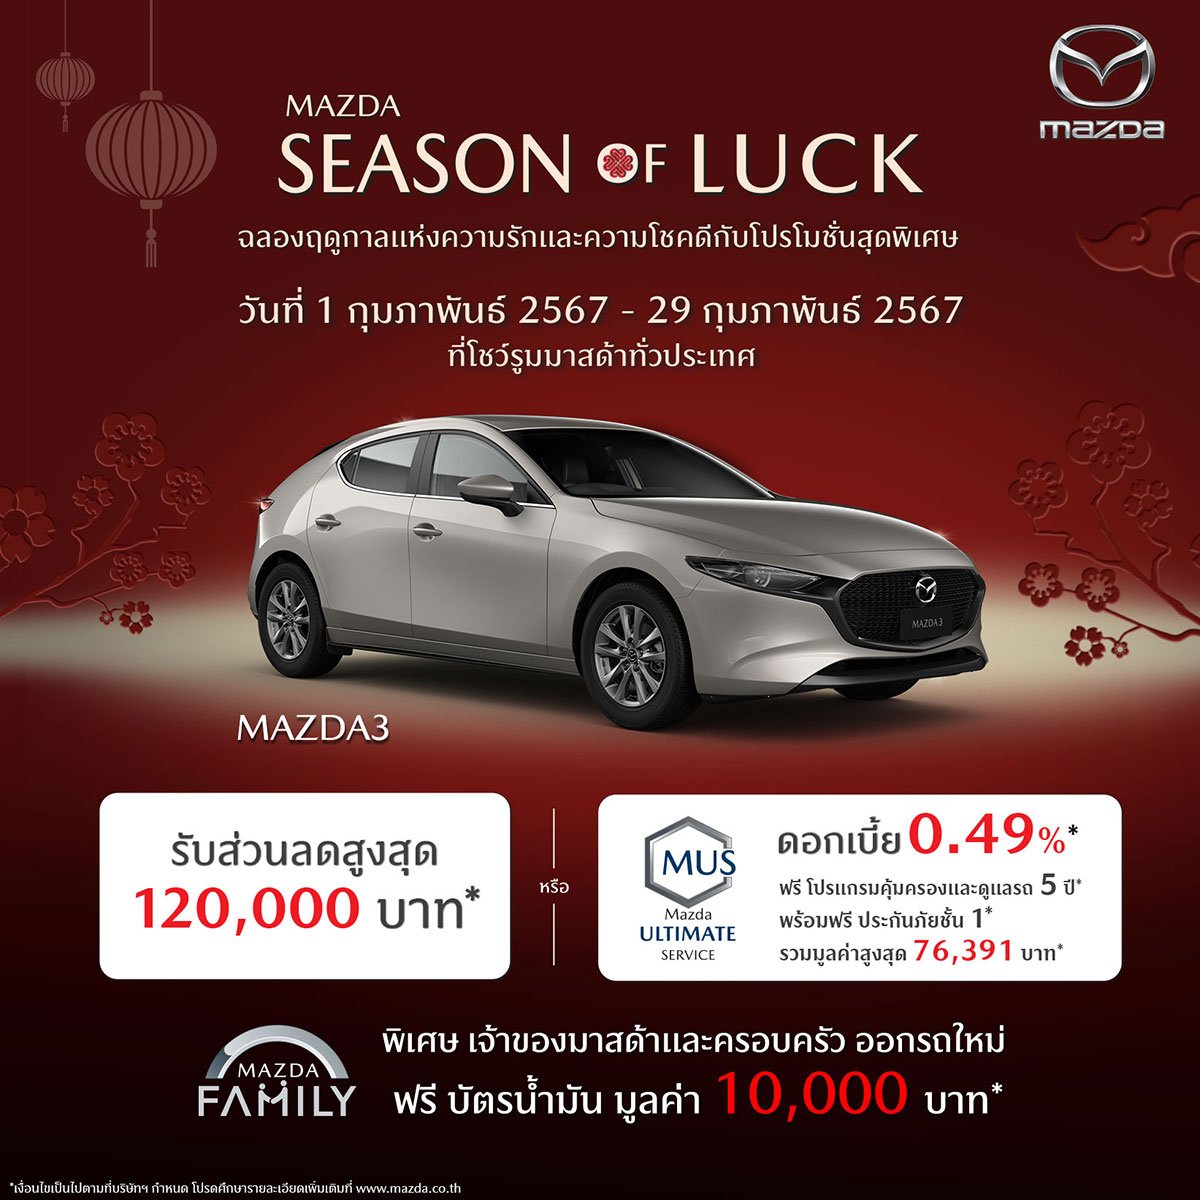 Mazda3 โปรโมชัน Mazda Season of Luck